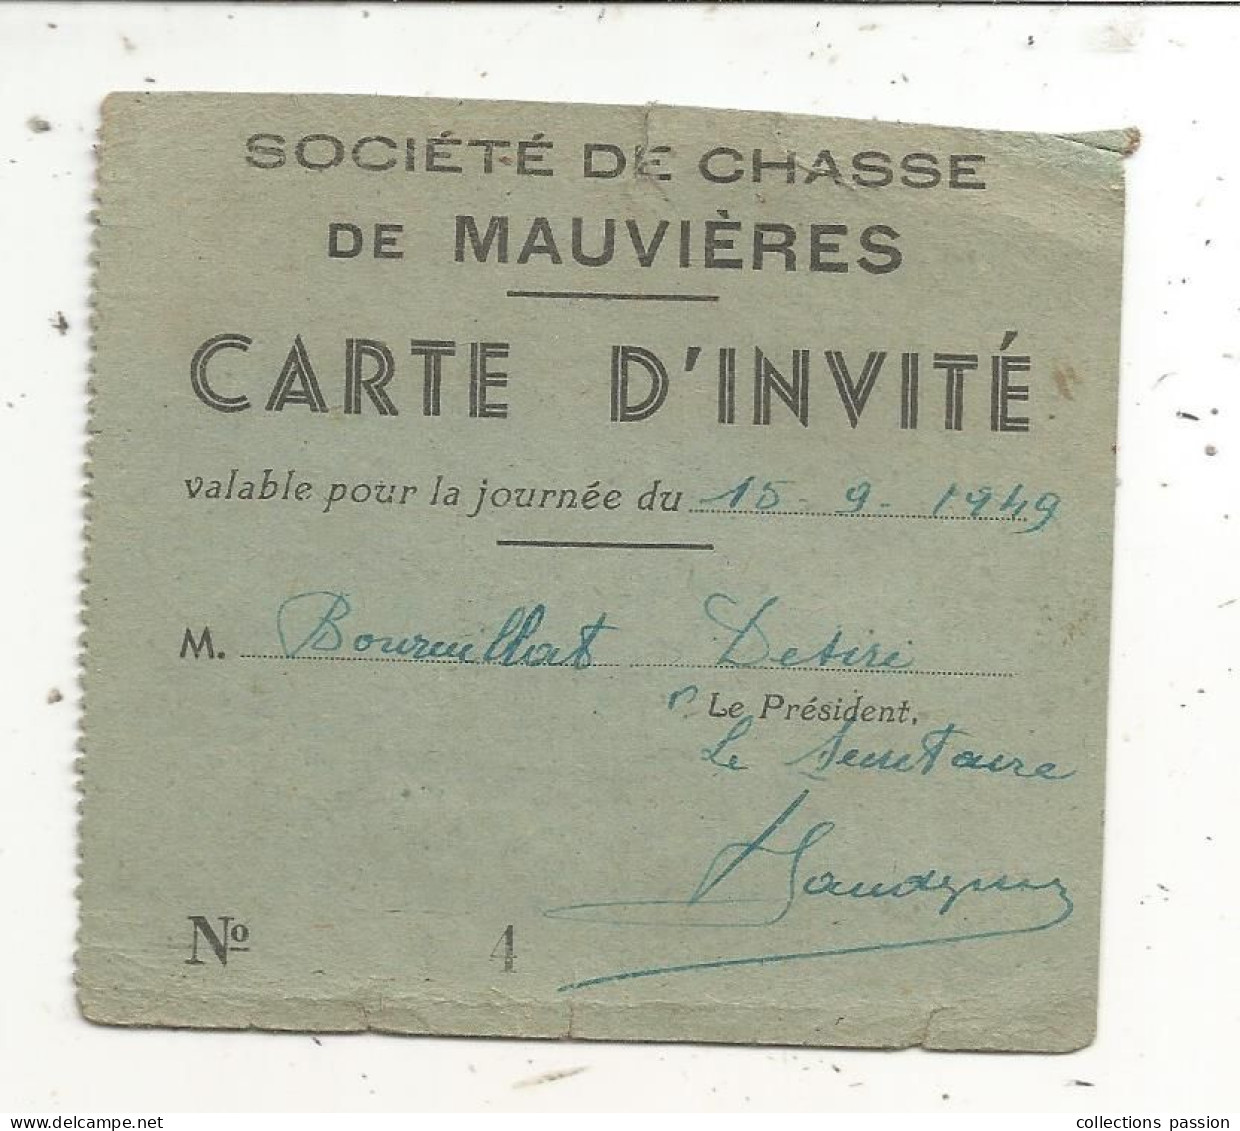 Carte D'invité, Société De Chasse De Mauvières, Indre, 1949 - Membership Cards